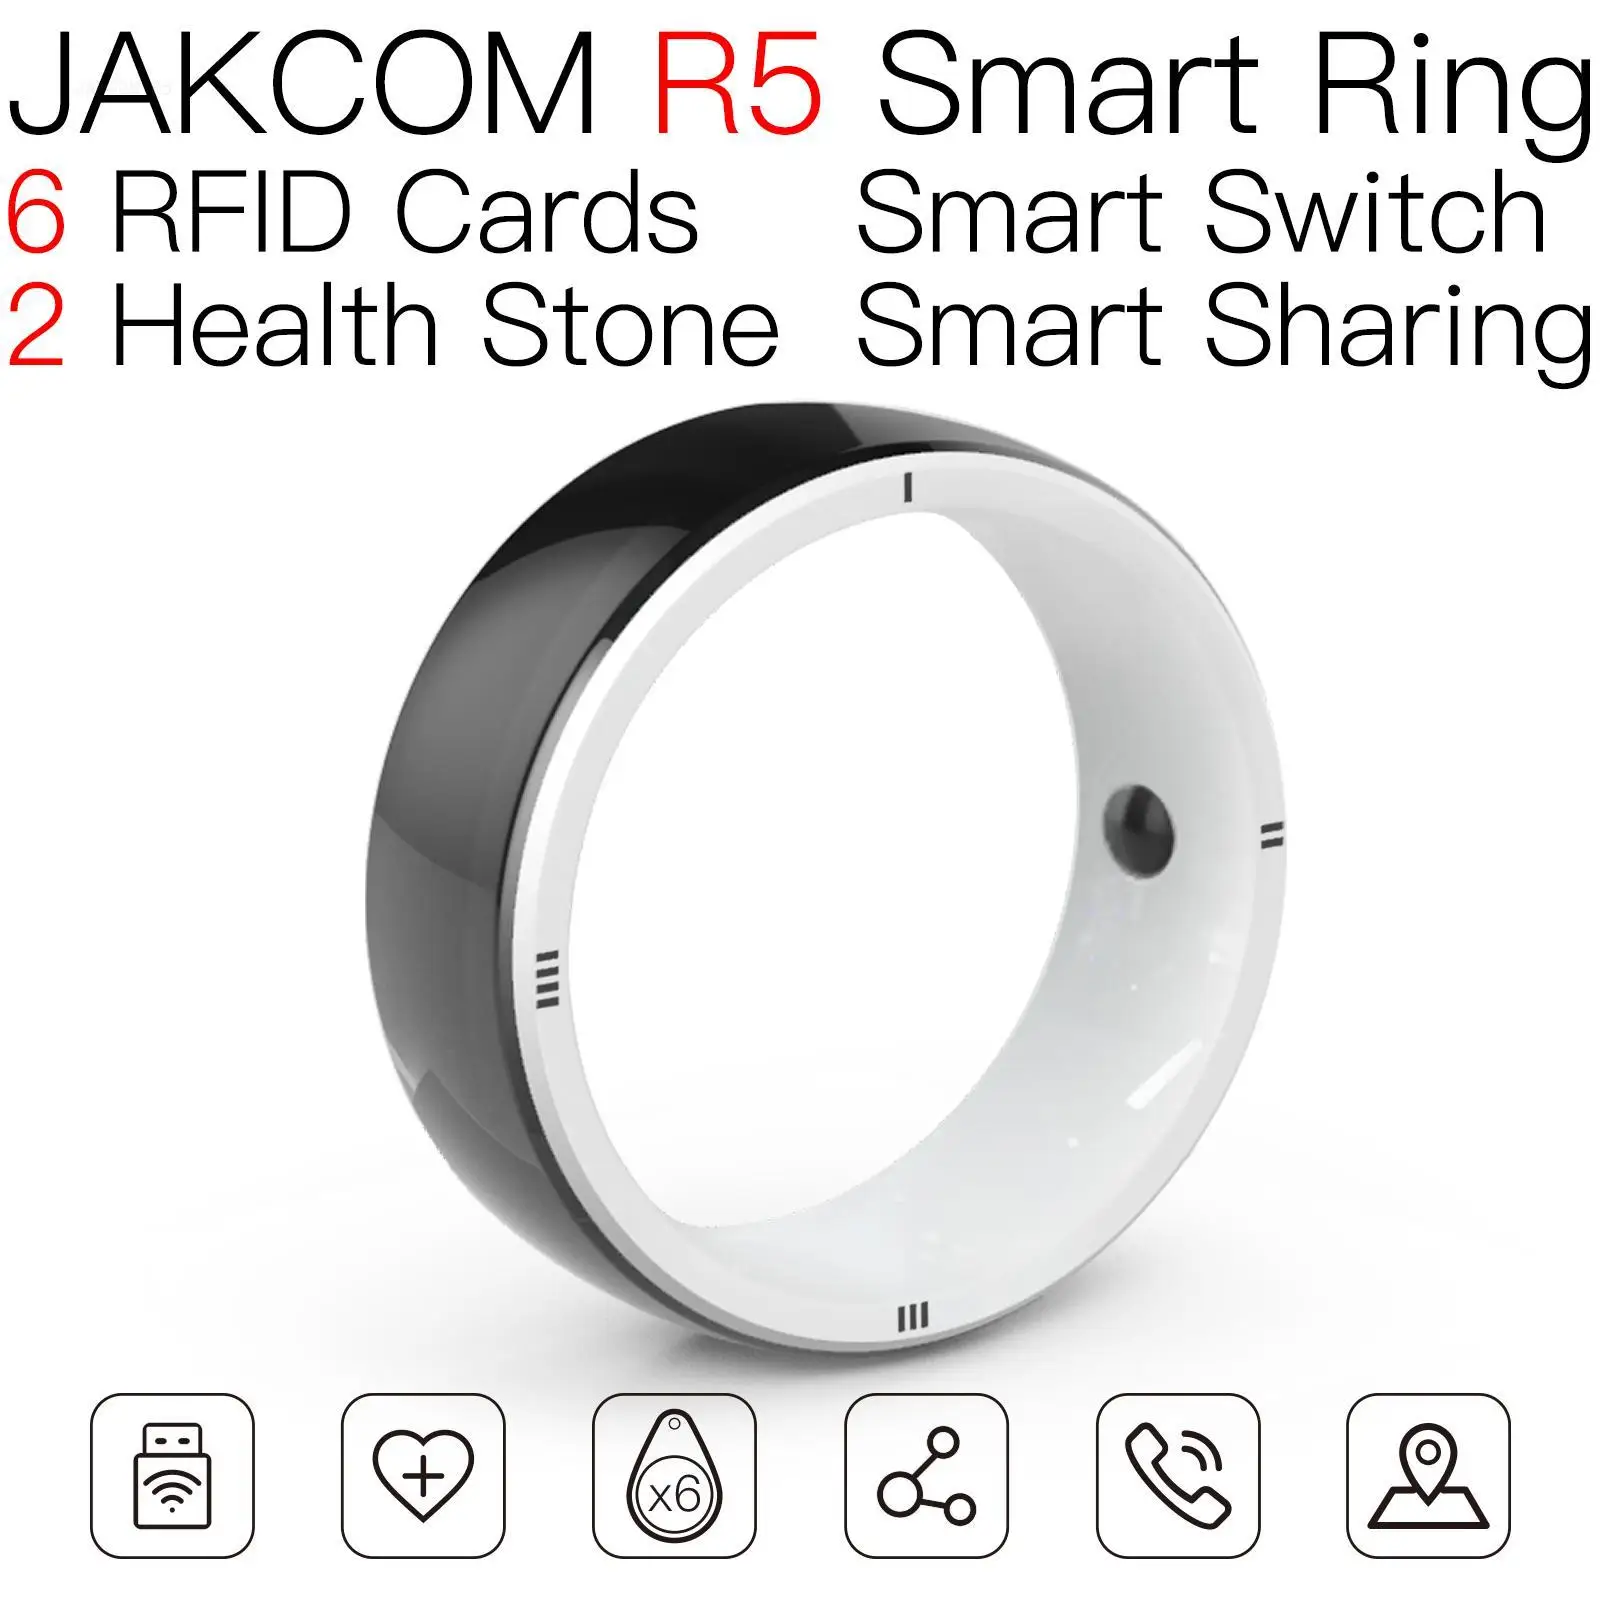 

Смарт-кольцо JAKCOM R5, Новое поступление, ярлык, многофункциональная катушка rfid 125 кГц, активный мини-контроллер для социальных сетей, перезаписываемая карта 125 кГц